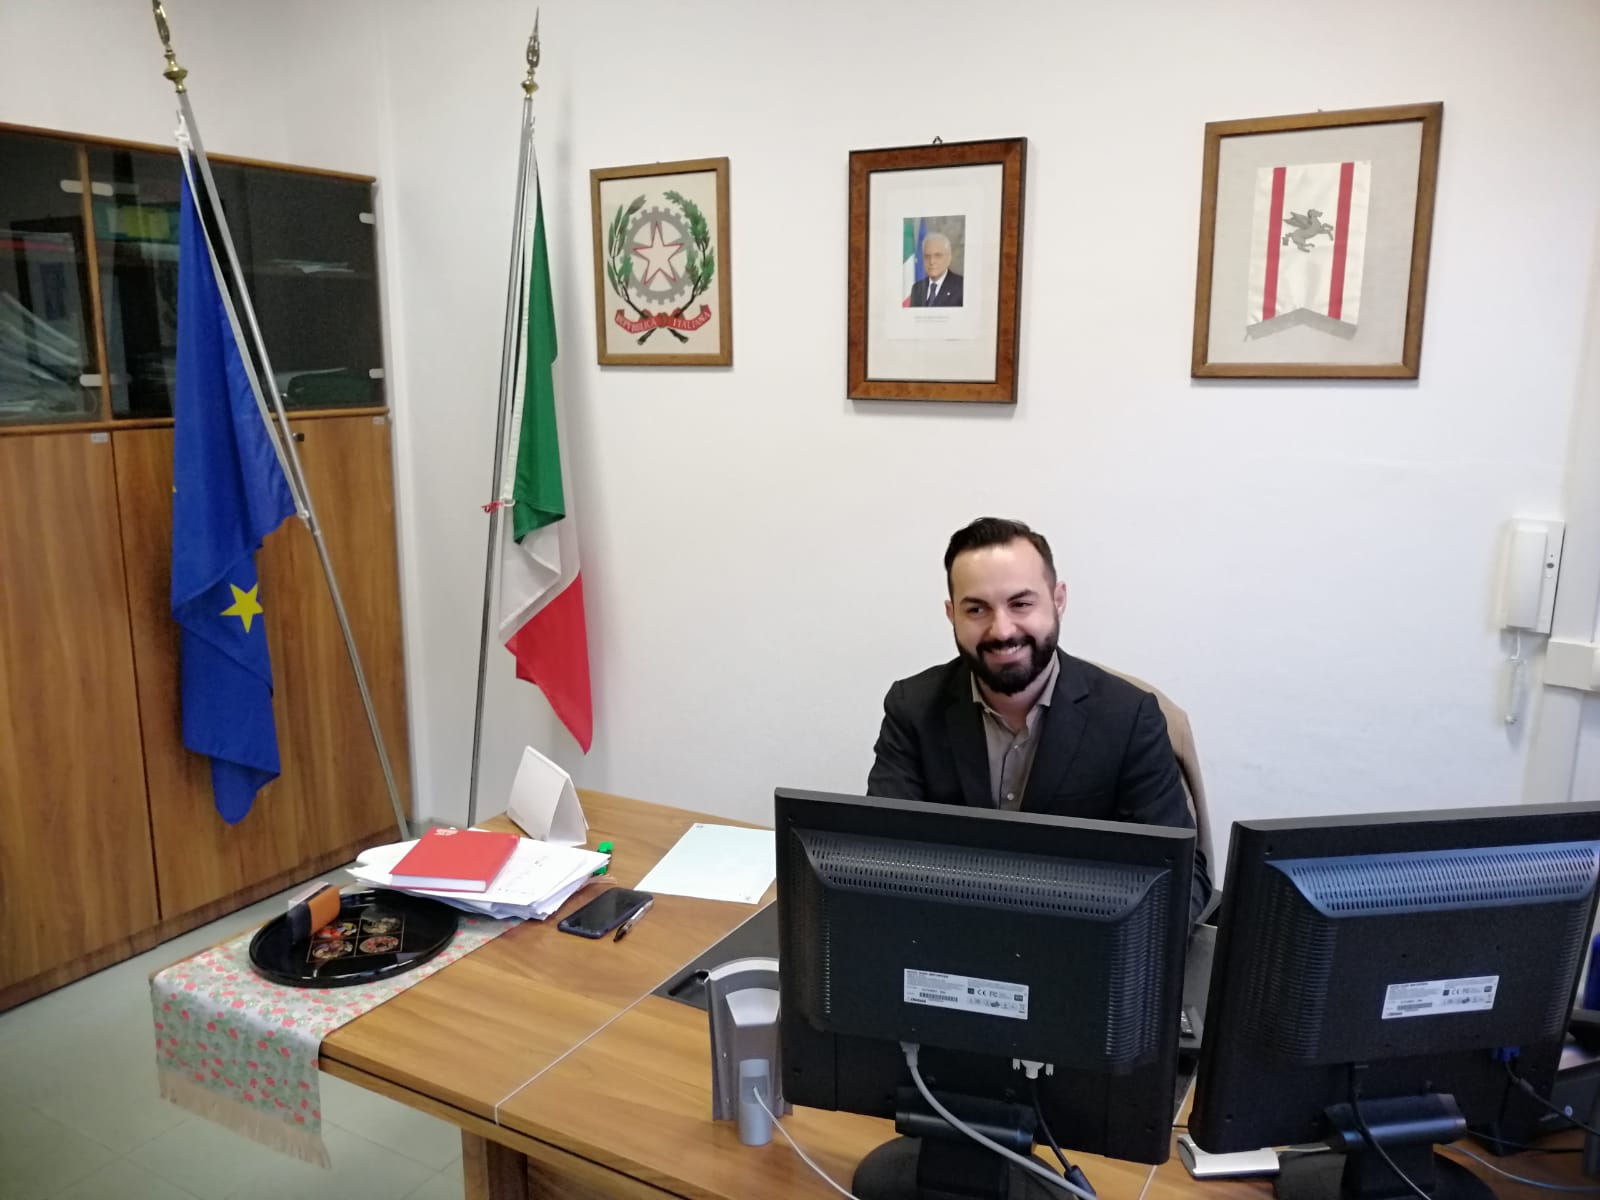 Il sindaco nel suo ufficio provvisorio di Borgo Garibaldi 37, primo piano, ricavato negli uffici già in uso all'ufficio tecnico